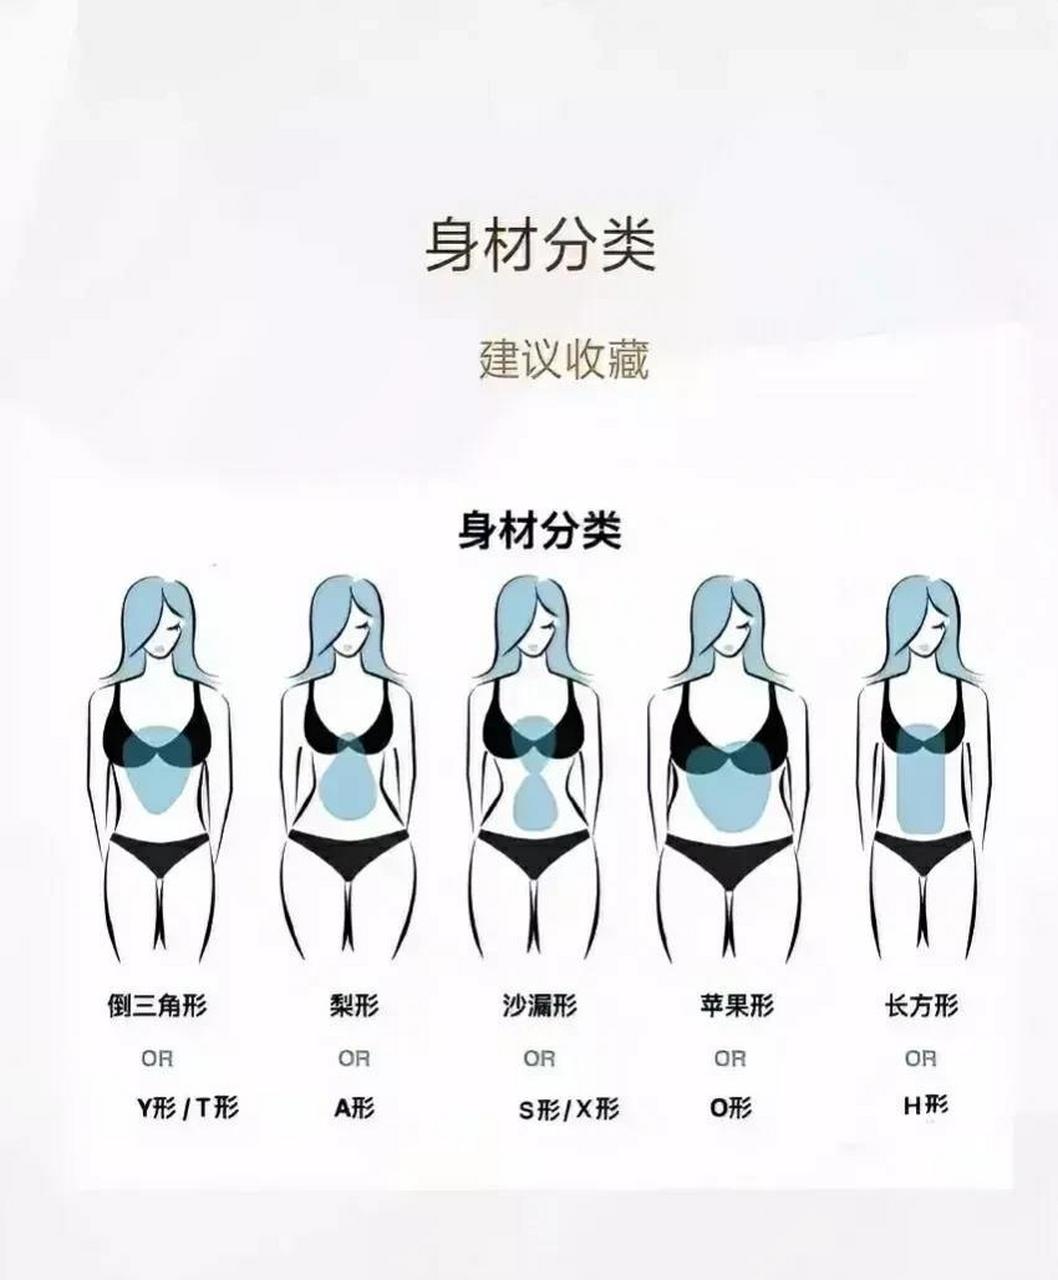 这是女性常见的各种身材分型,我怎么感觉梨形和漏斗型没有多大区别